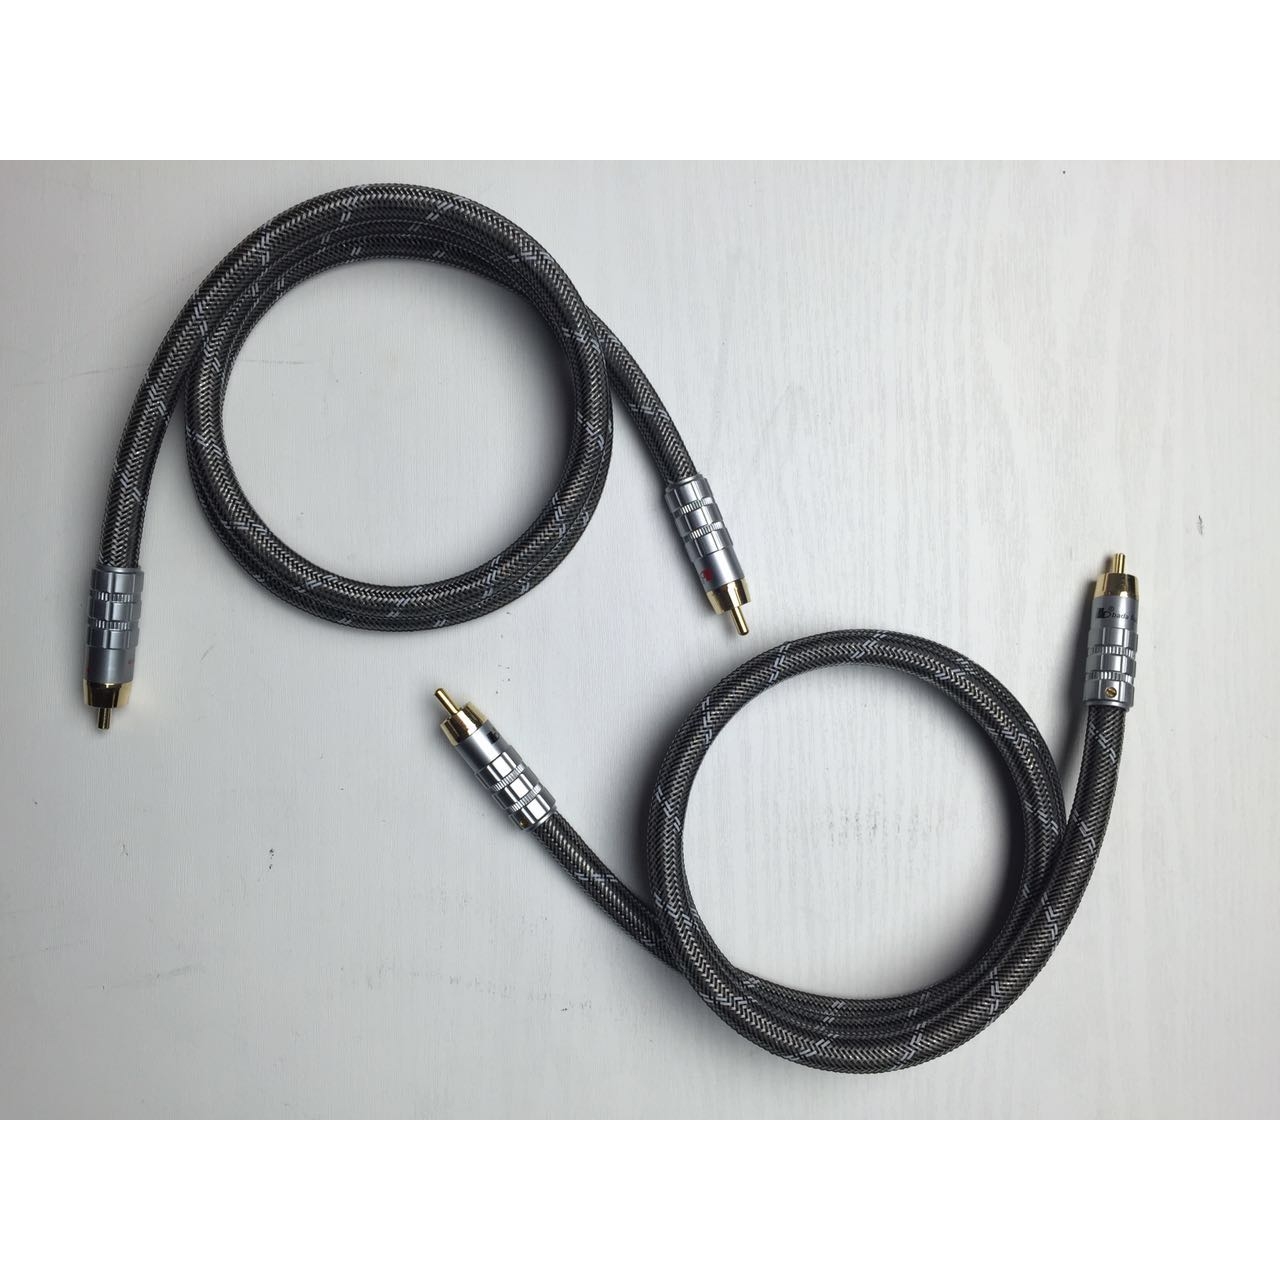 BADA HL-1 Аудиофильский соединительный кабель Super Audio, пара 1 м